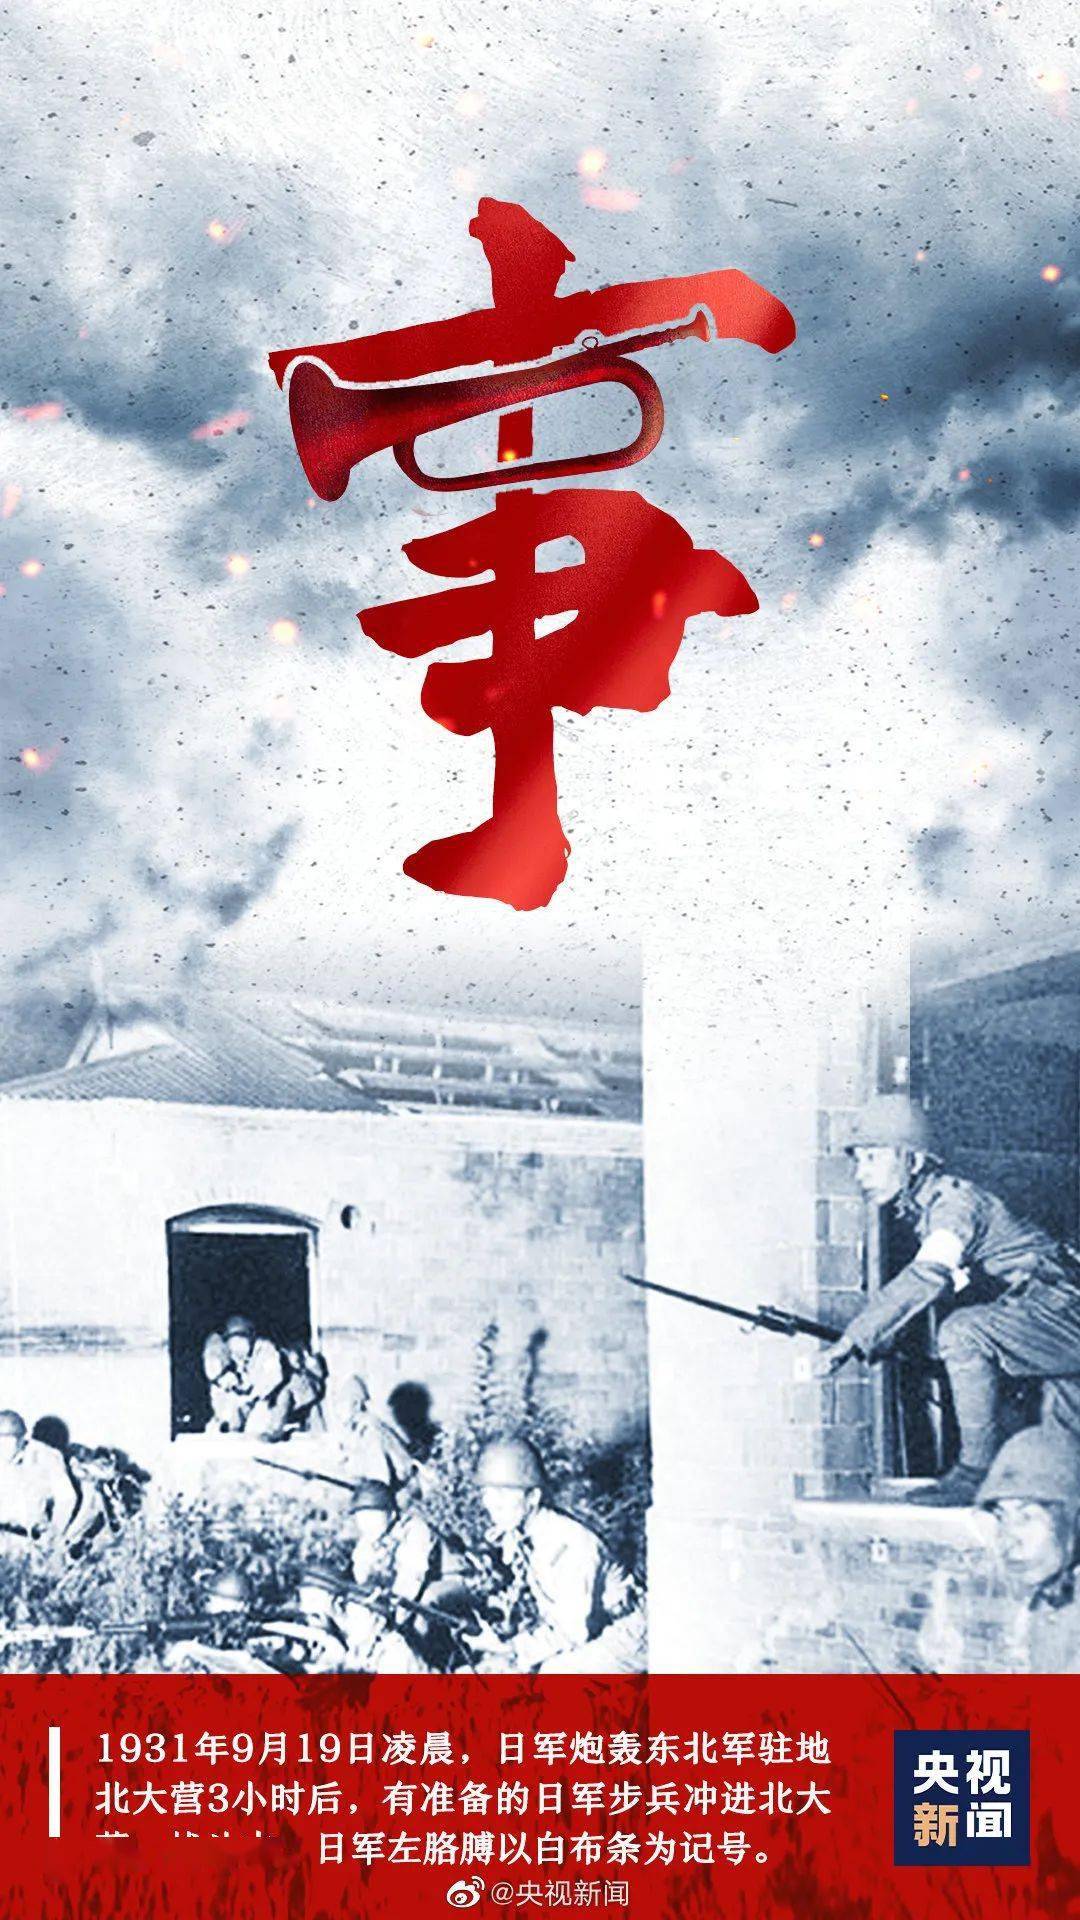 1931年9月18日,是中国人民永远难忘囊一天.